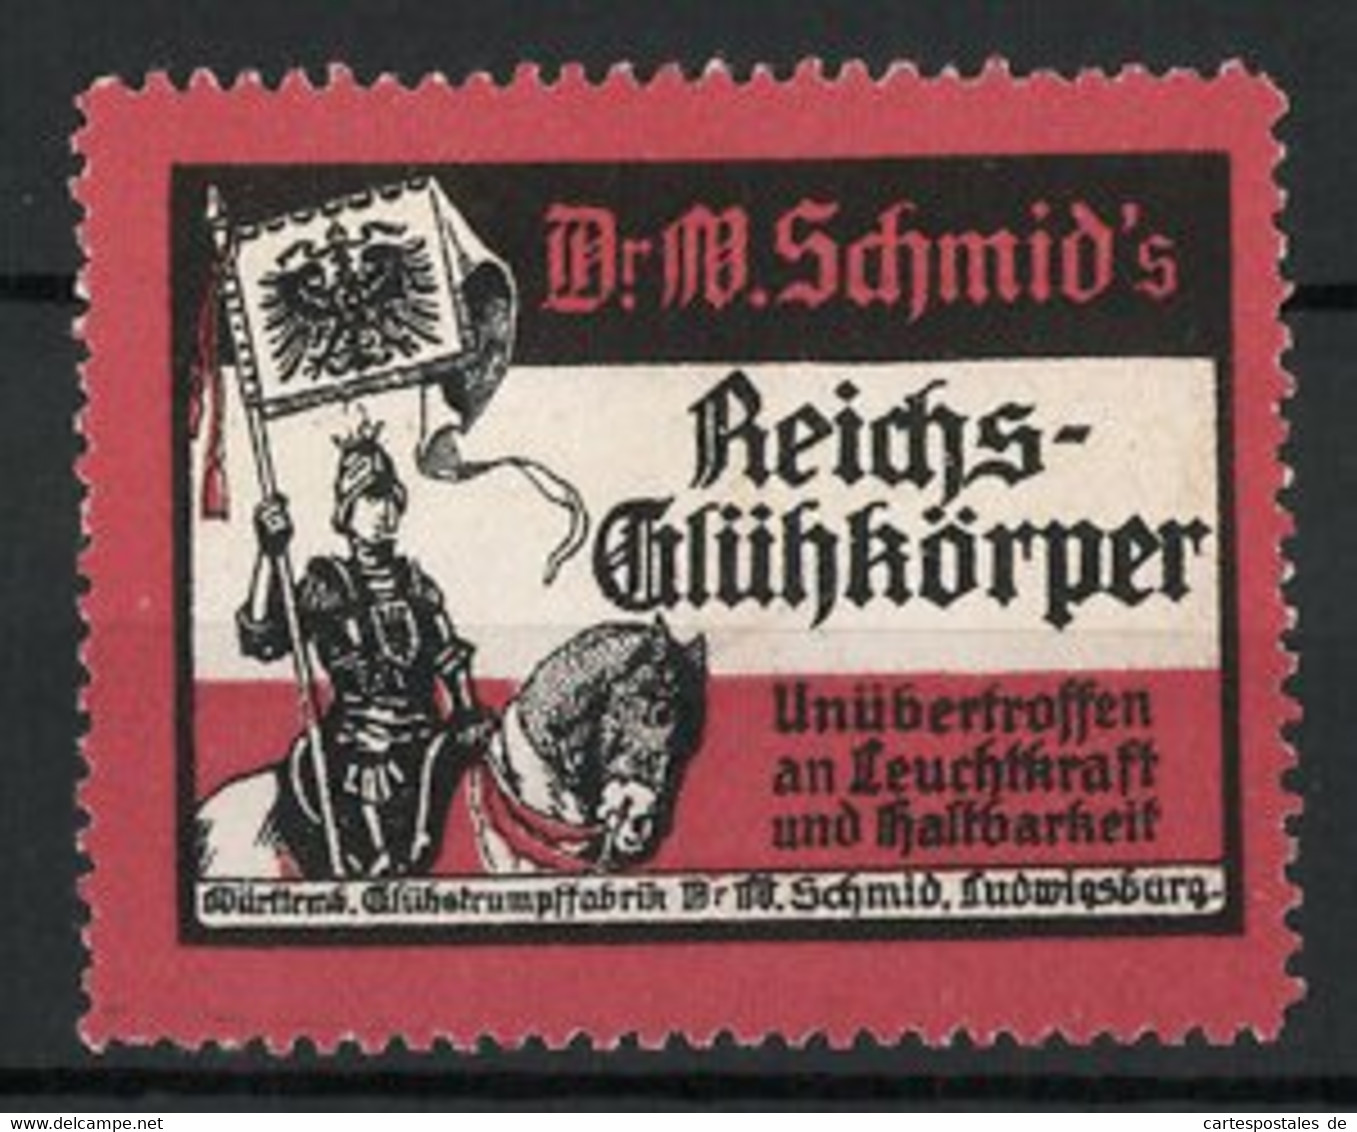 Reklamemarke Dr. W. Schmid's Reichs-Glühkörper Ist Unübertroffen An Leuchtkraft Und Haltbarkeit, Ritter Auf Pferd - Cinderellas